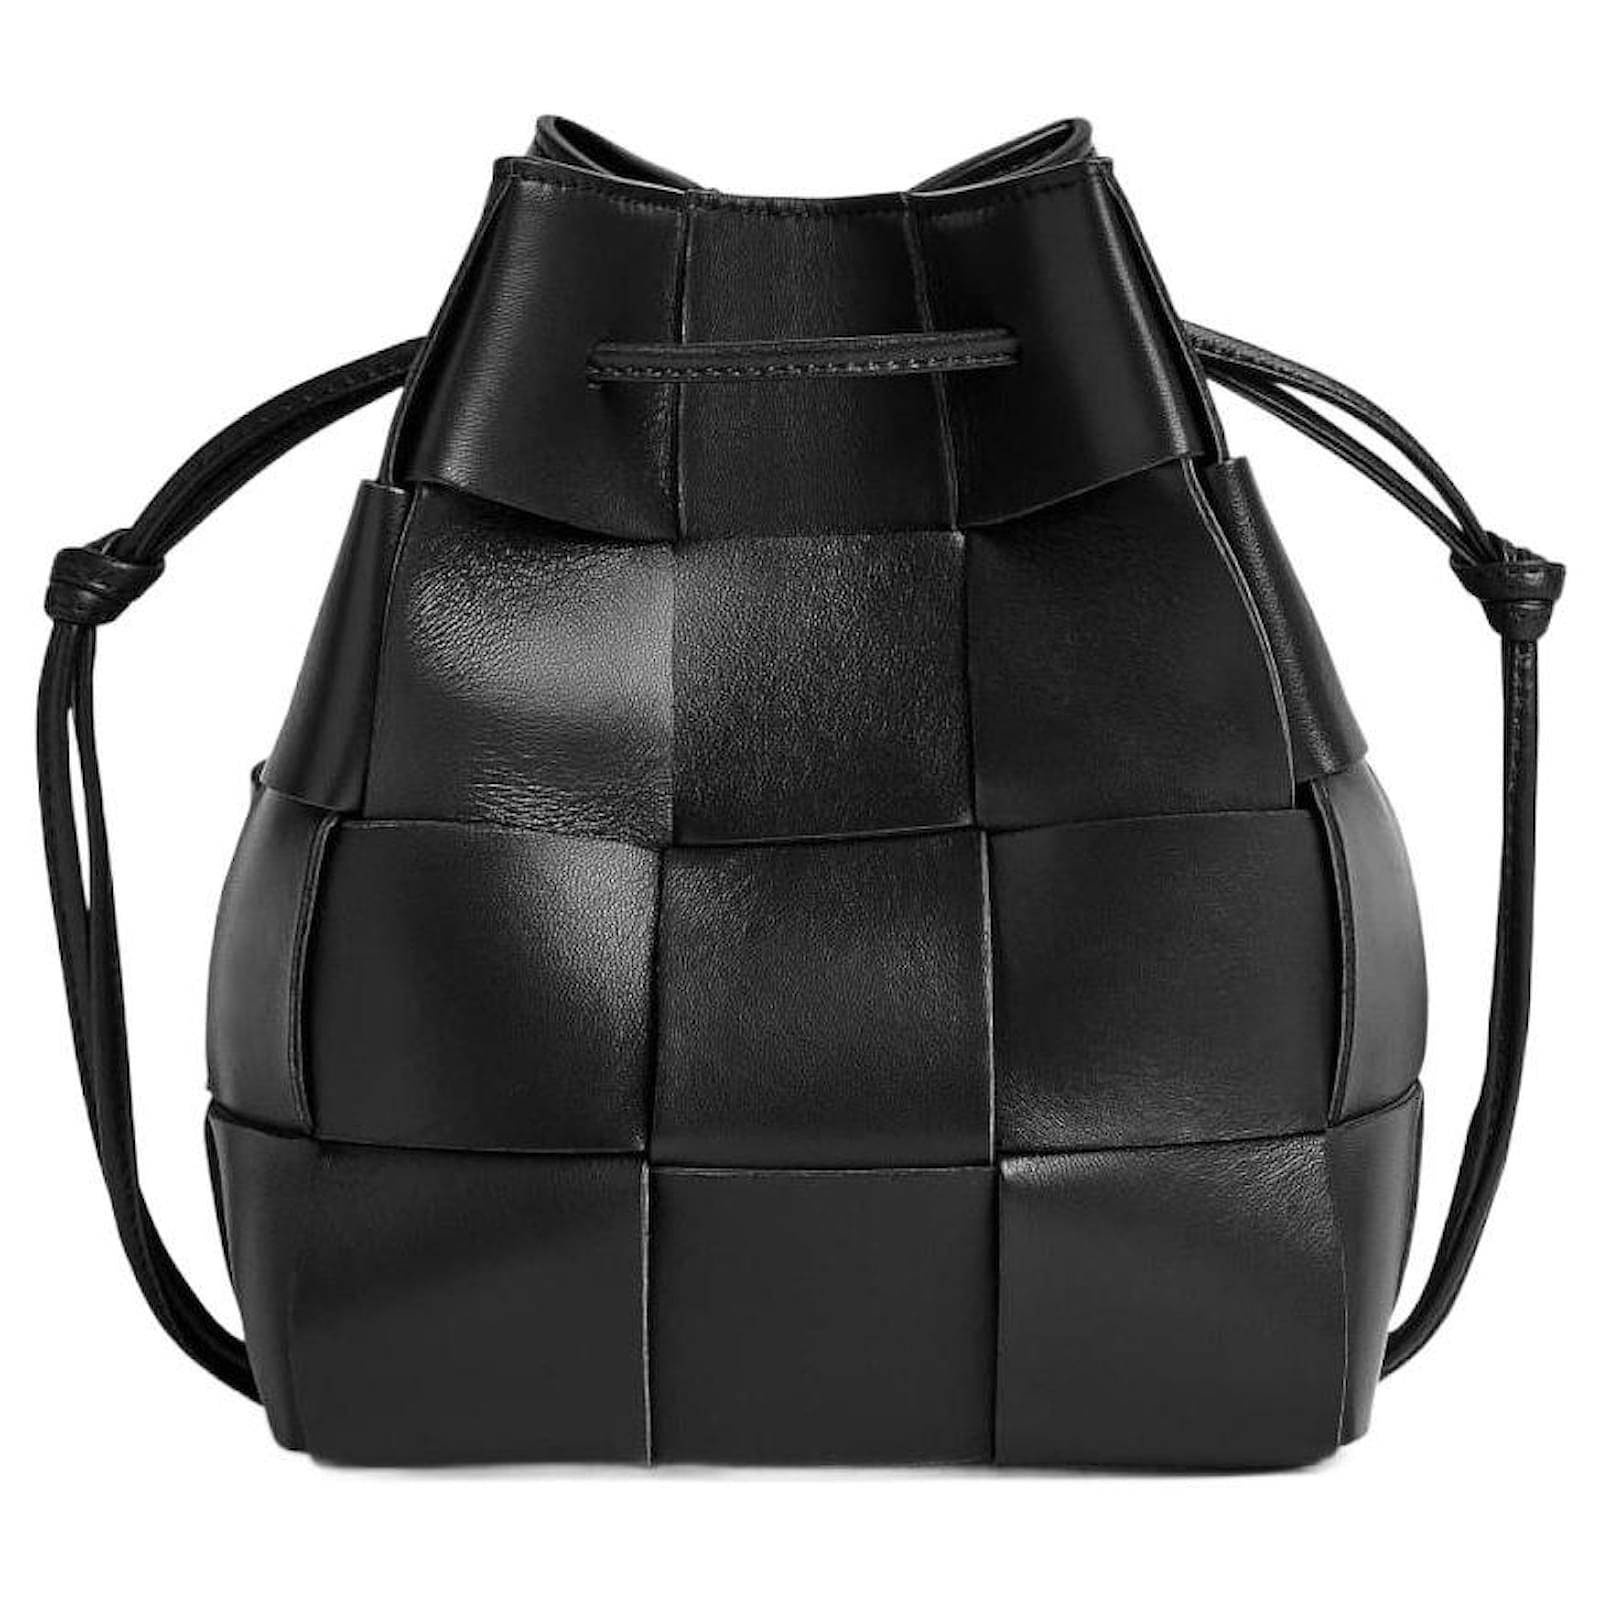 Bottega Veneta - Women's Cassette Bucket Bag - Black - Leather